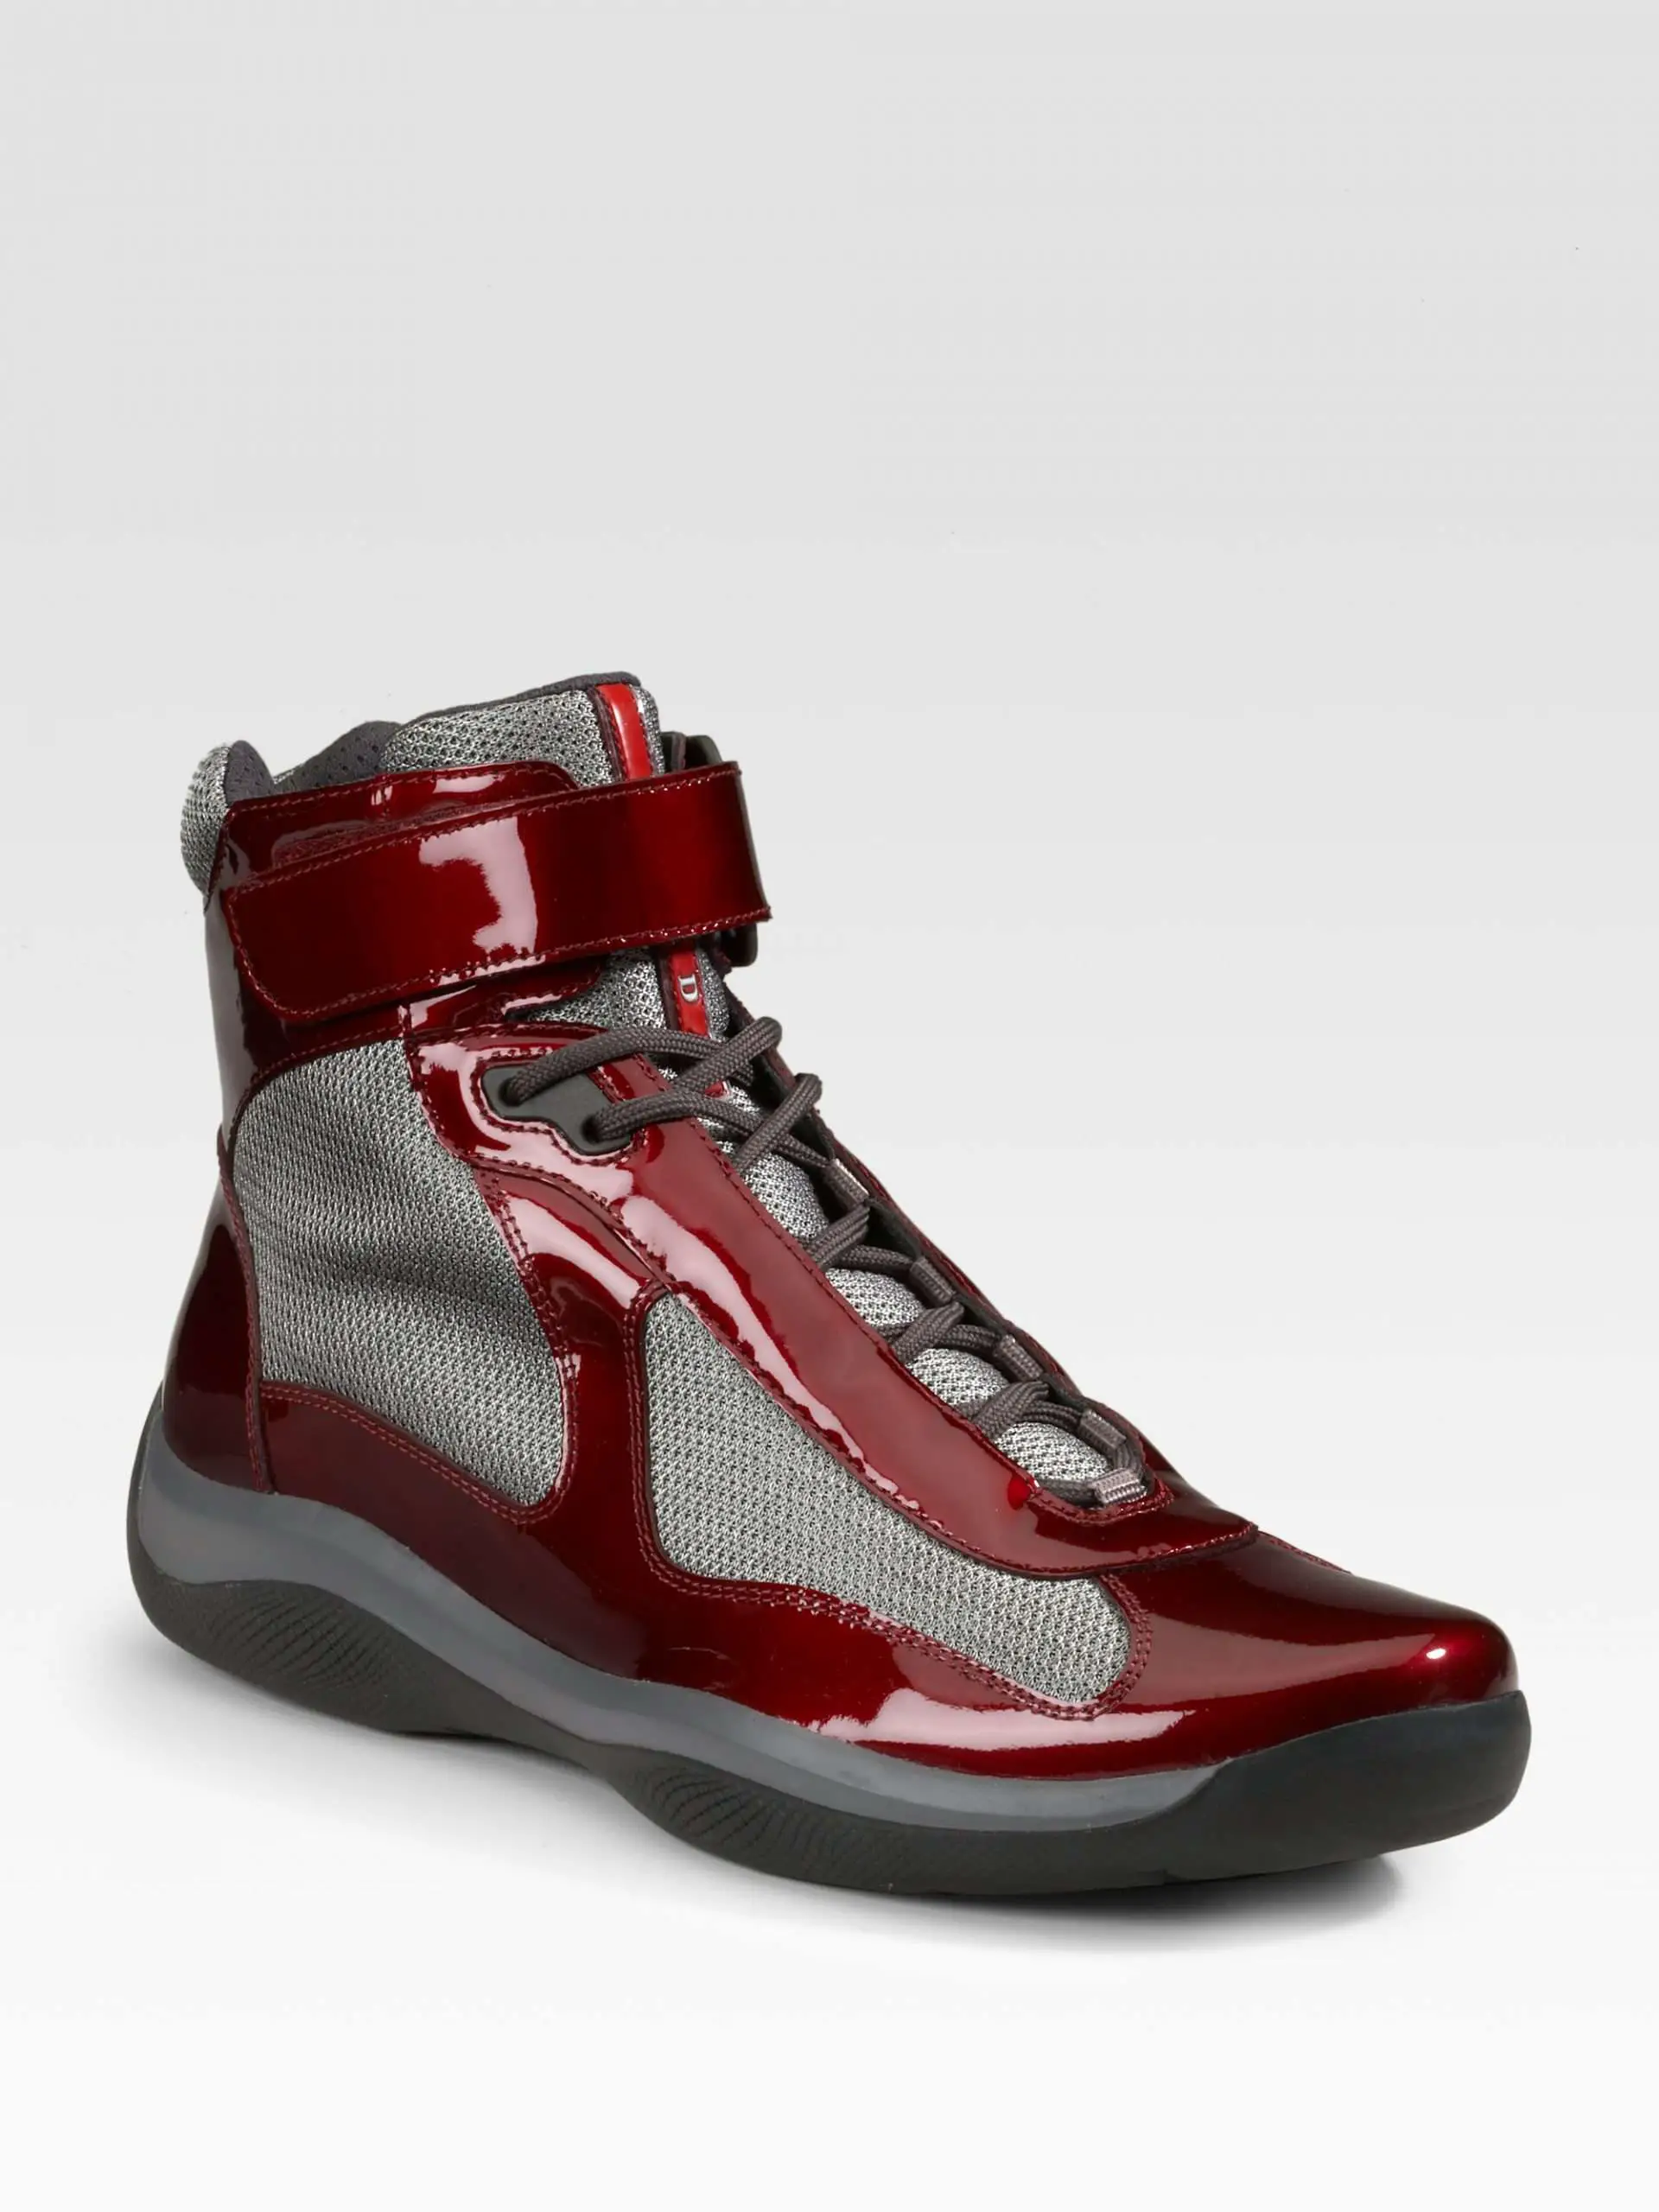 Prada Hightop Patent Sneakers in Dark Red (Red)